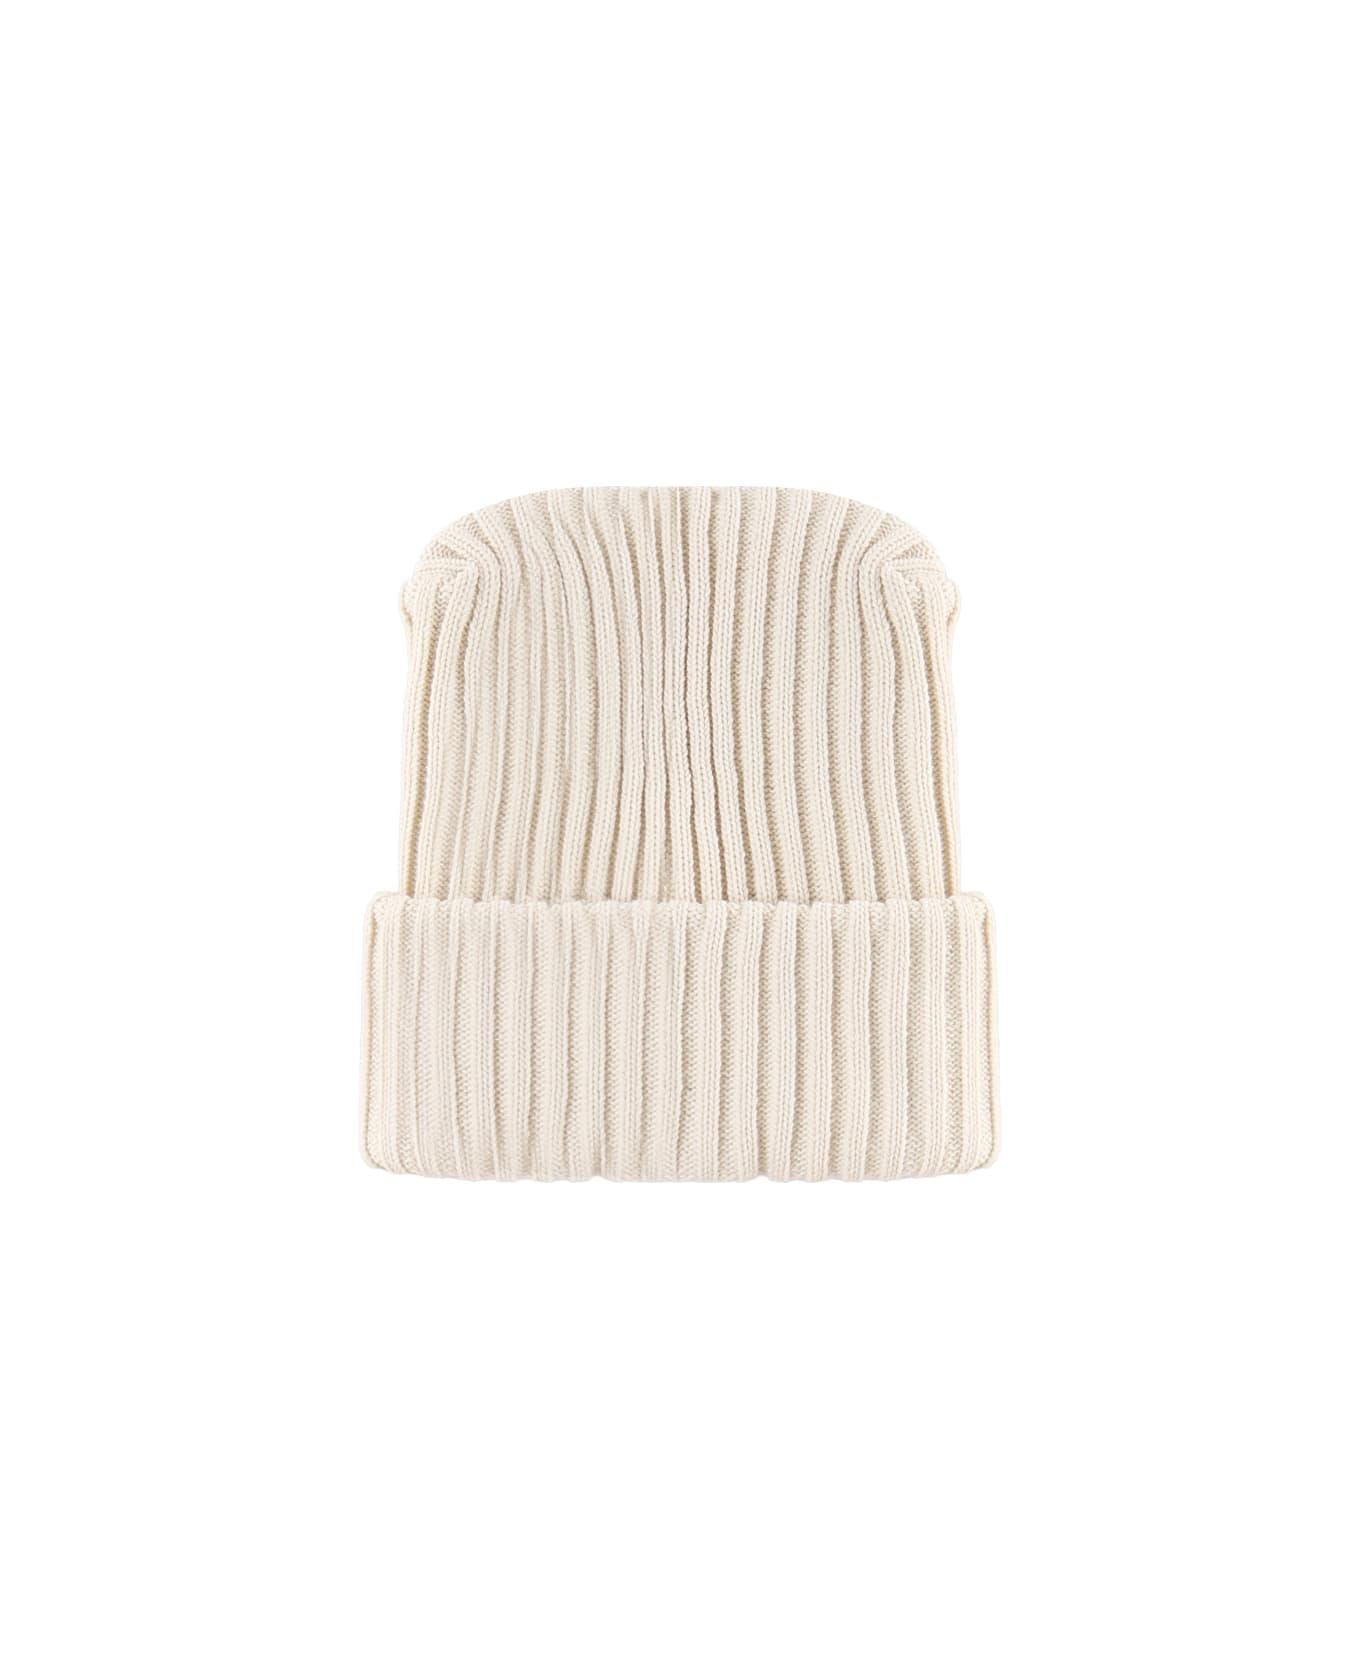 Moncler Genius Wool Cap - White 帽子